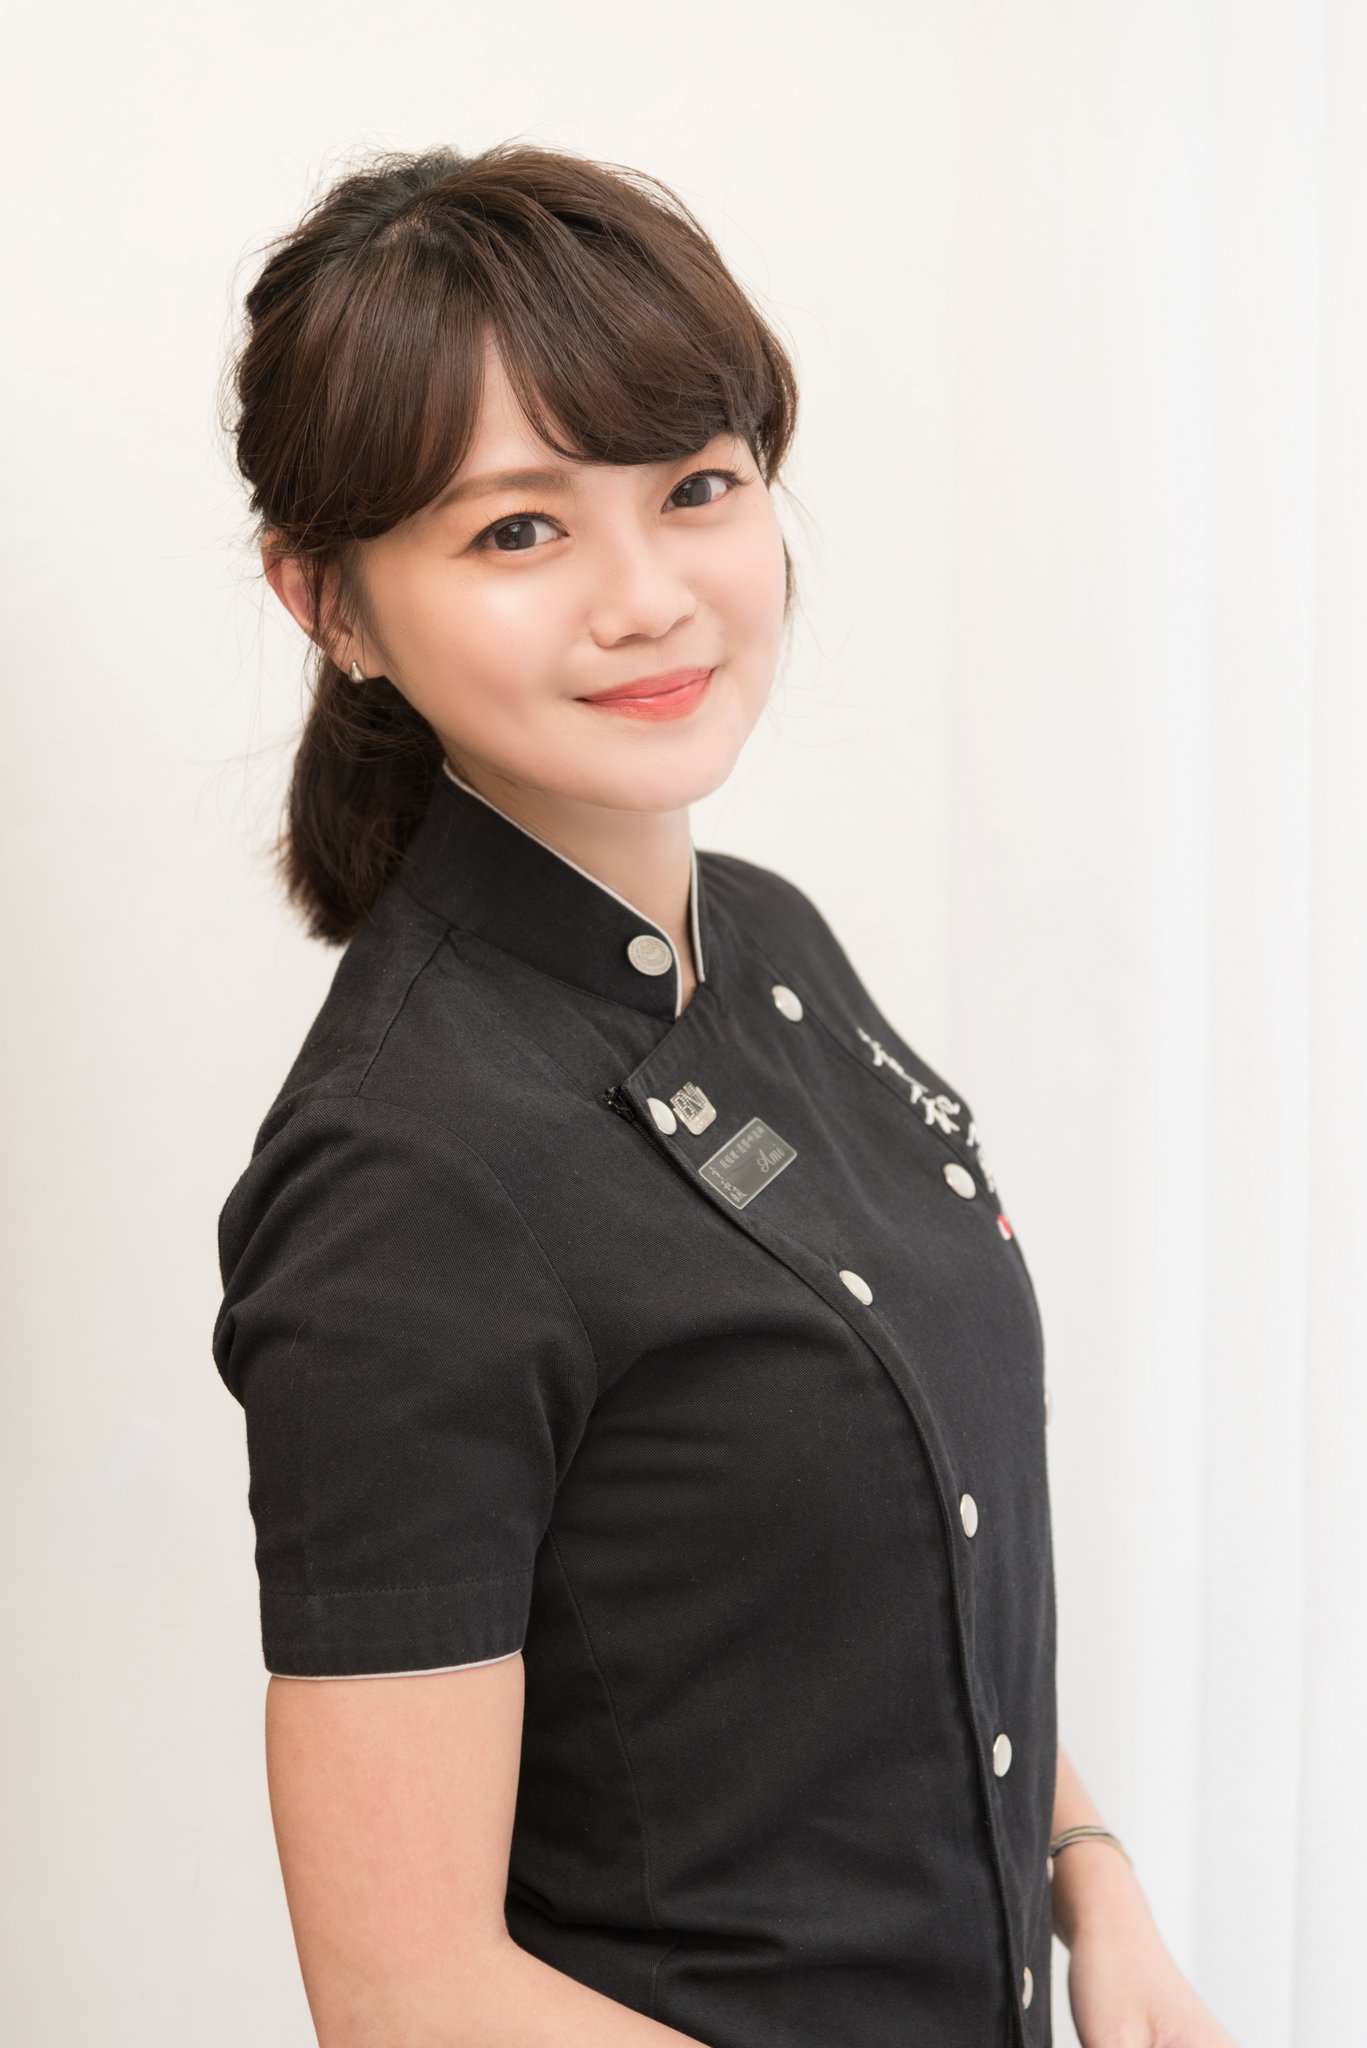 化妝服務 單次彩妝設計 日式料理老闆娘 Ami